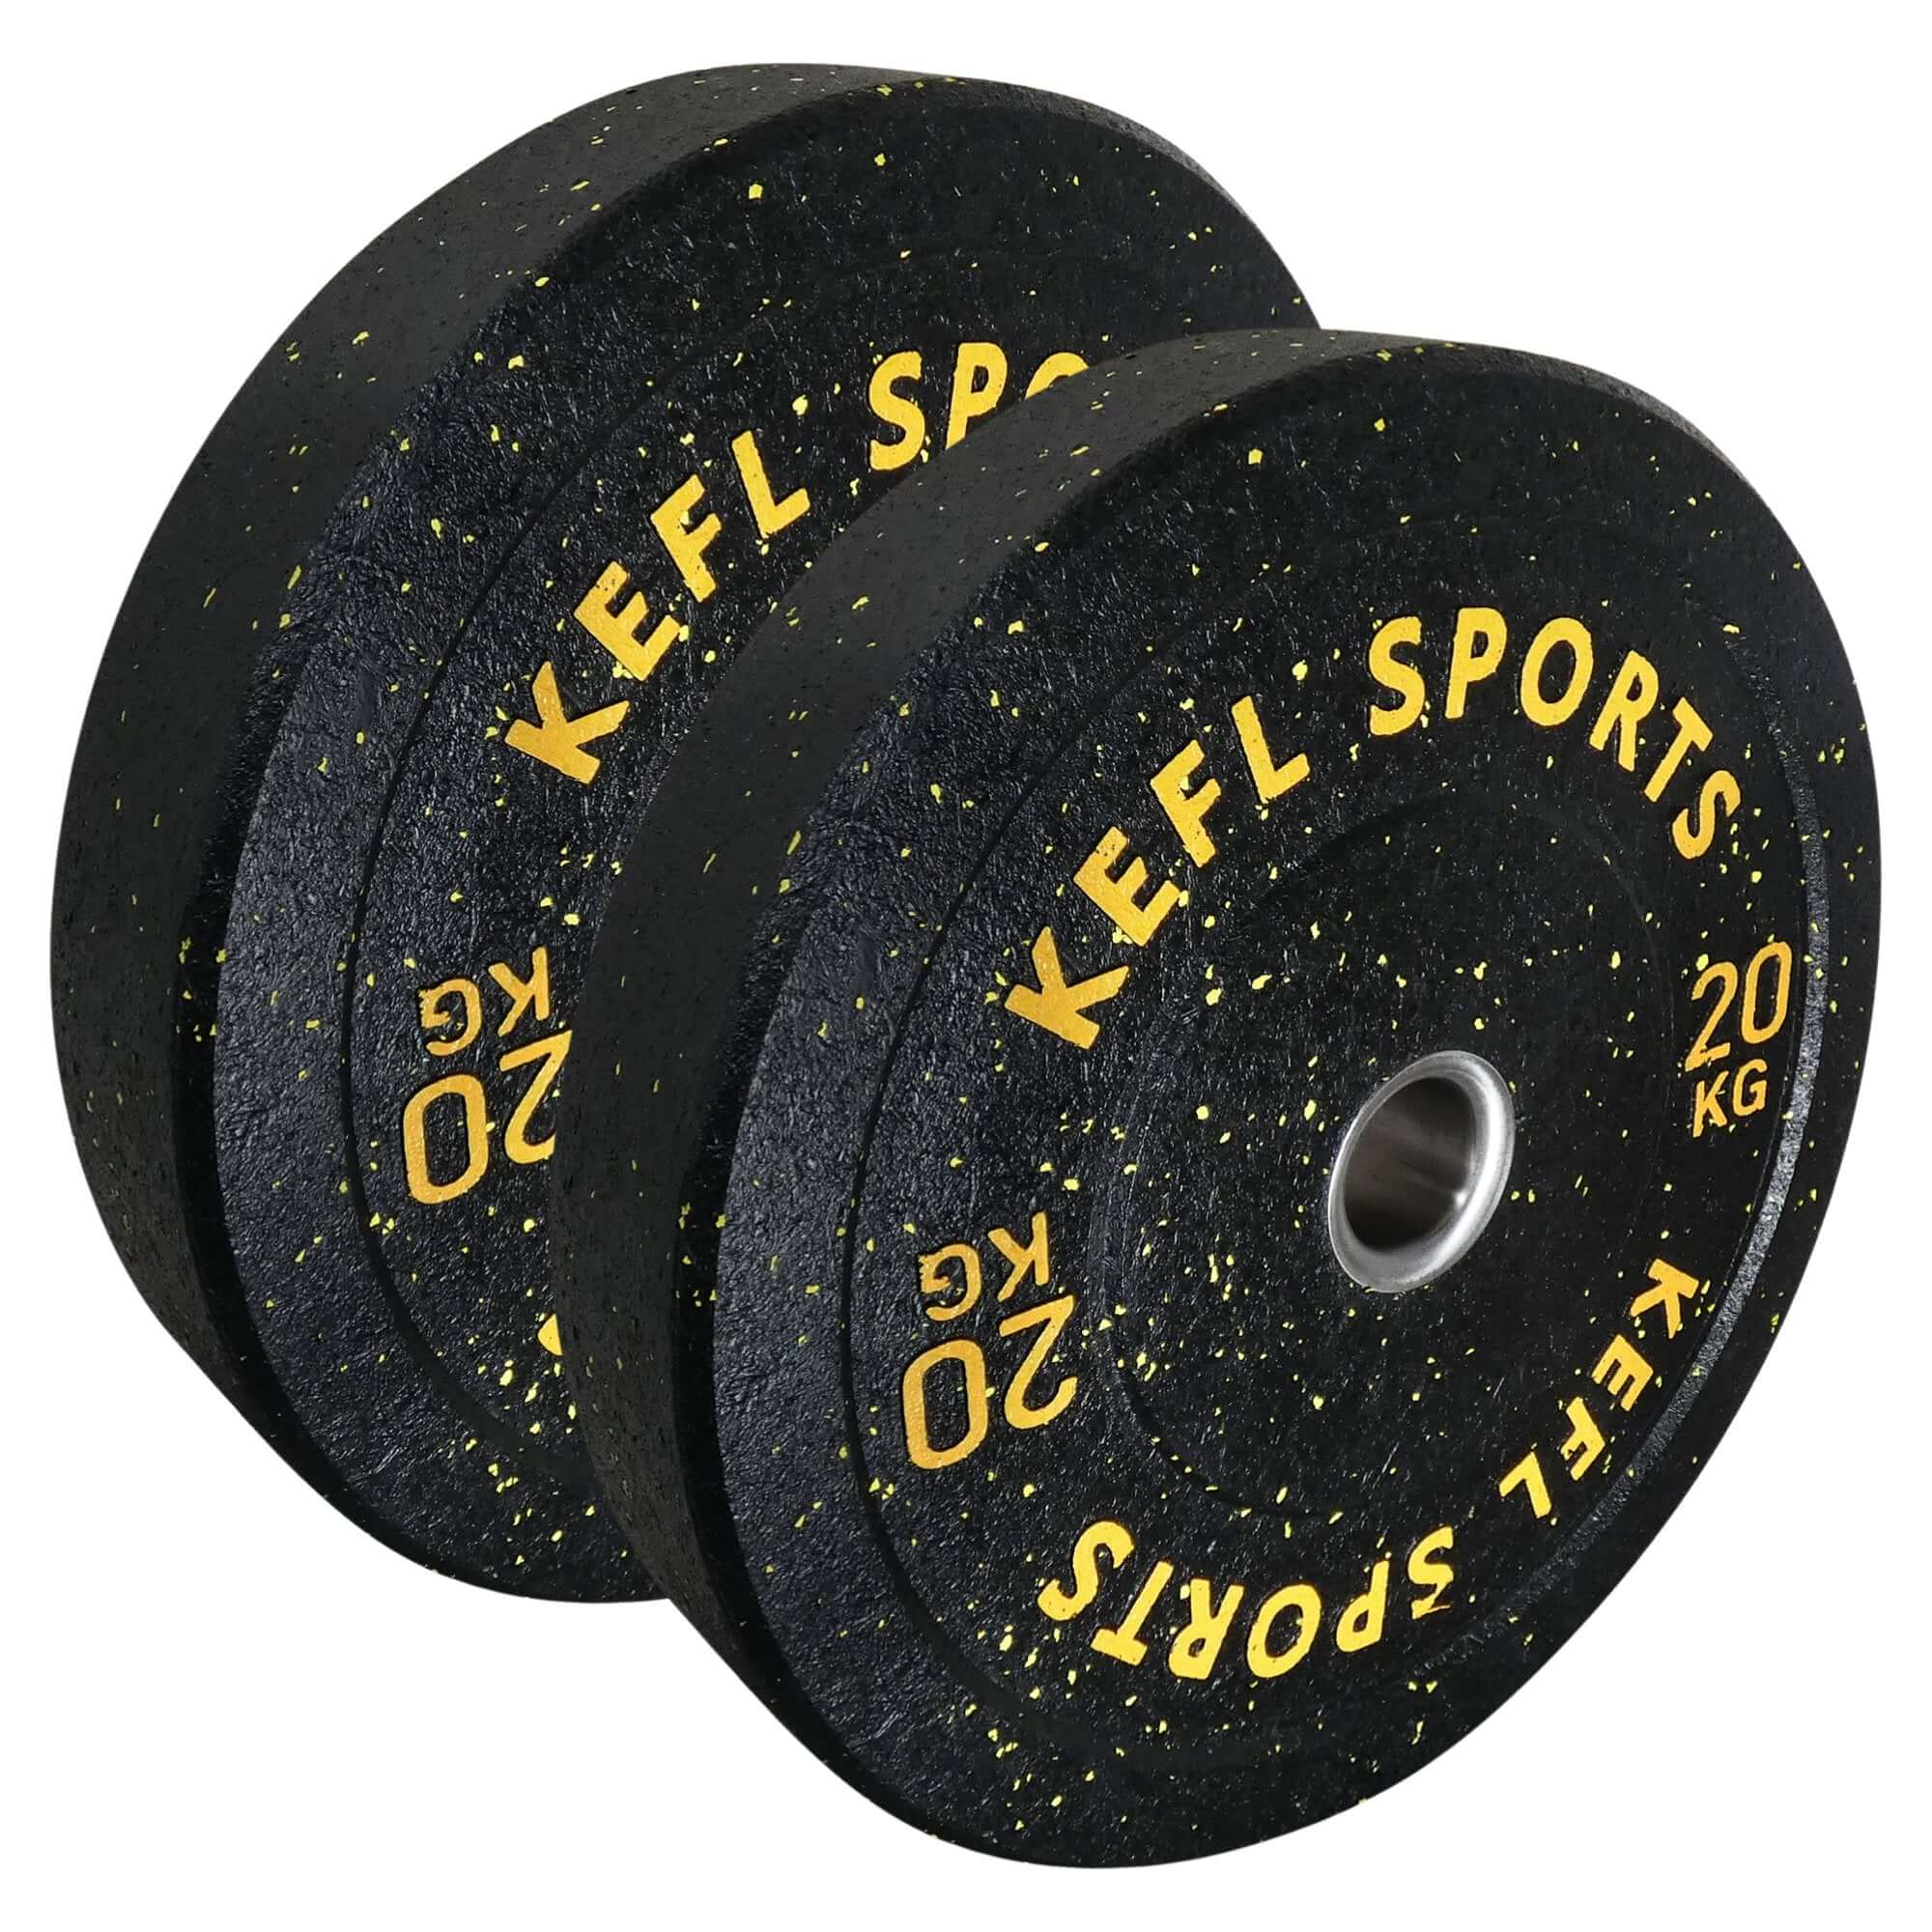 KEFL Colour Splash Bumper Plates - KEFLUK